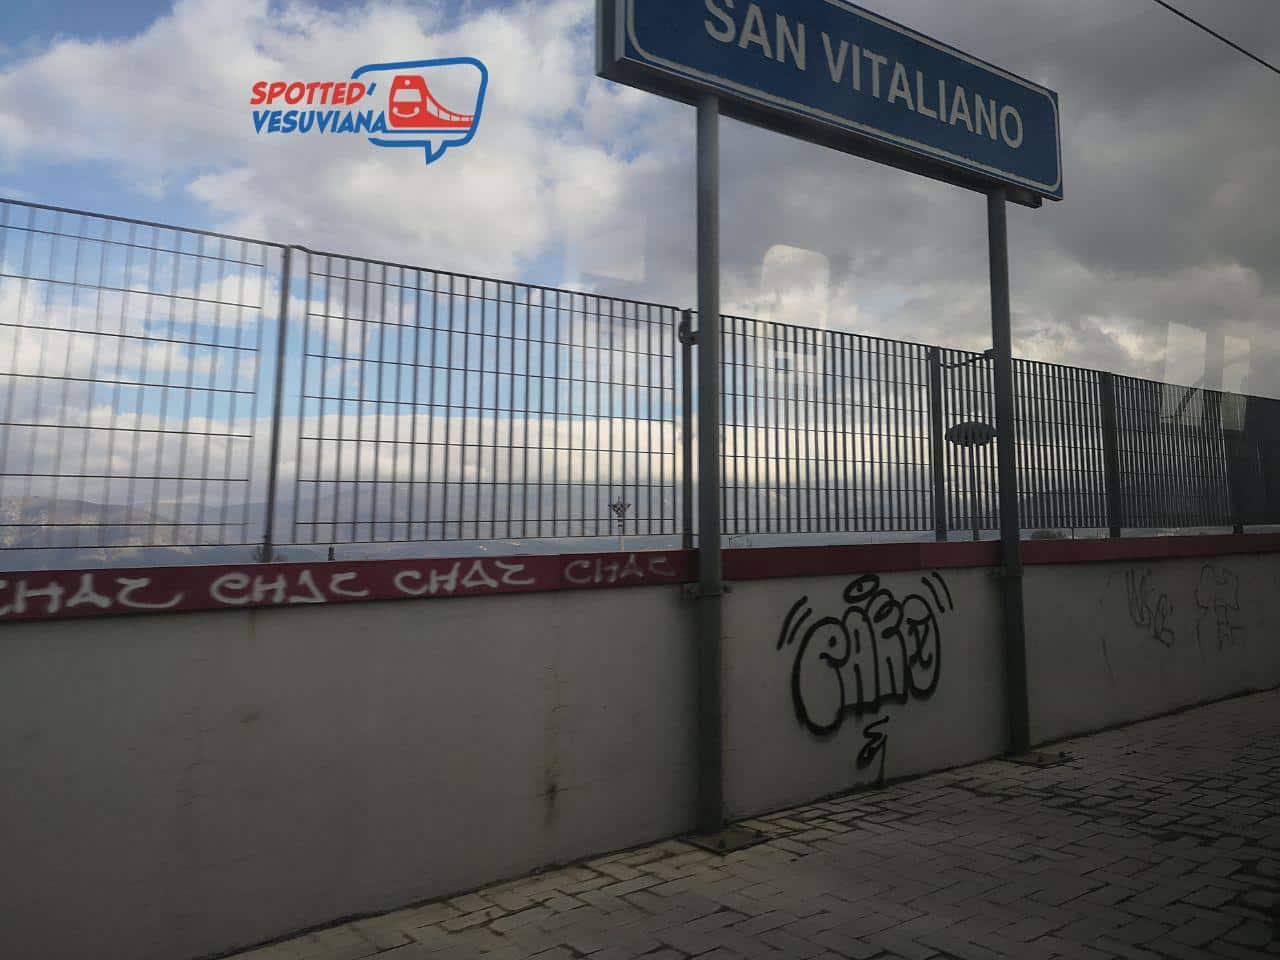 Rubrica fotografica “Le stazioni della Circumvesuviana” – San Vitaliano